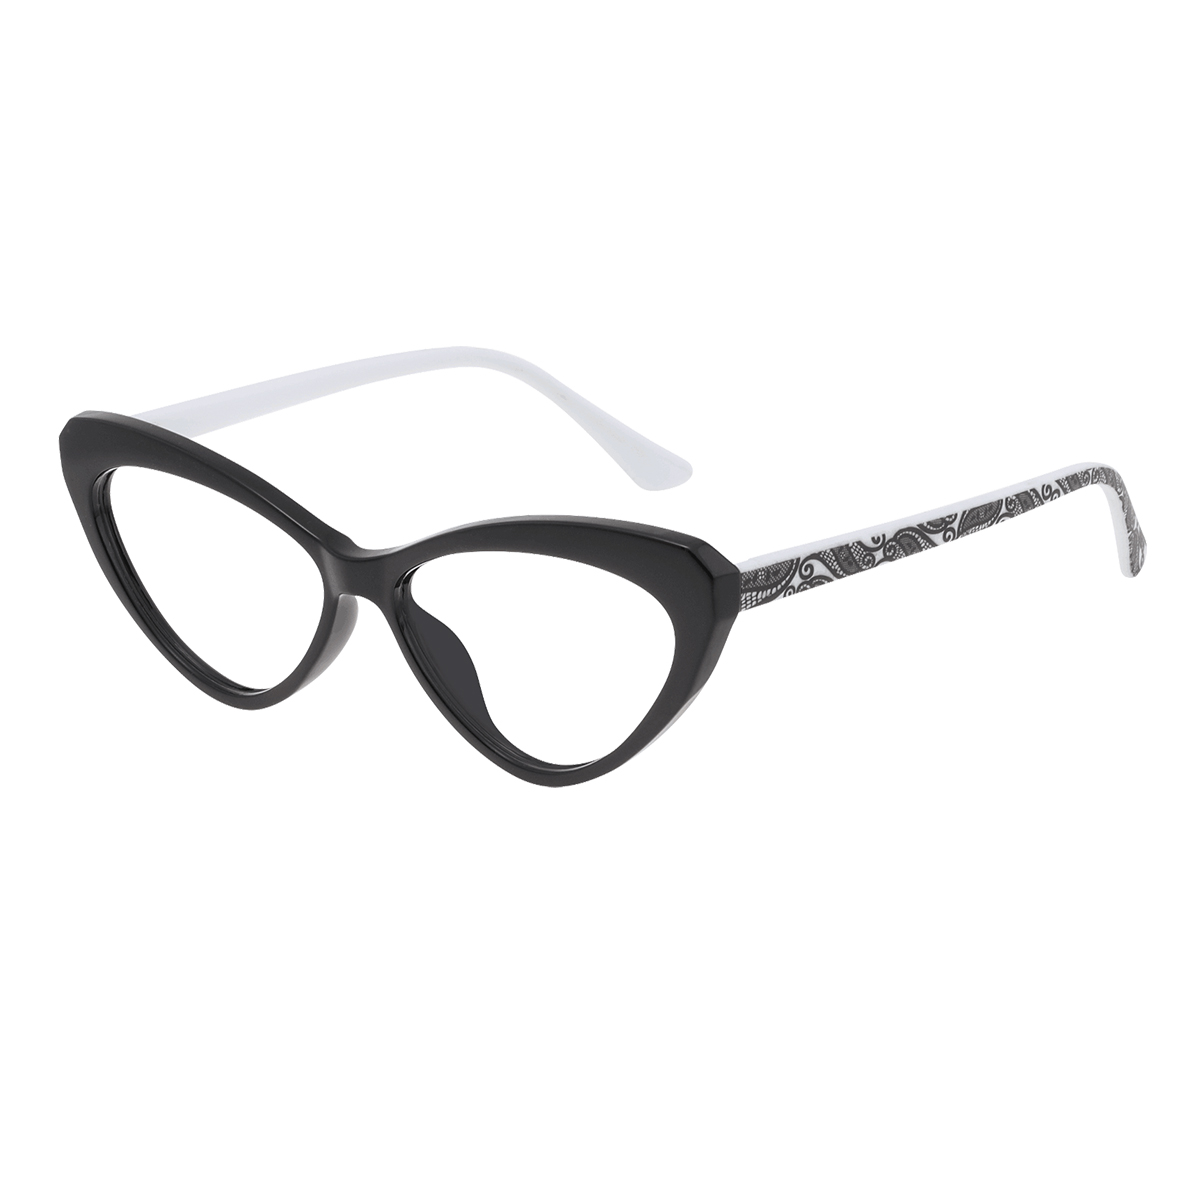 Pindus - Cat-eye Black Reading Glasses for Women